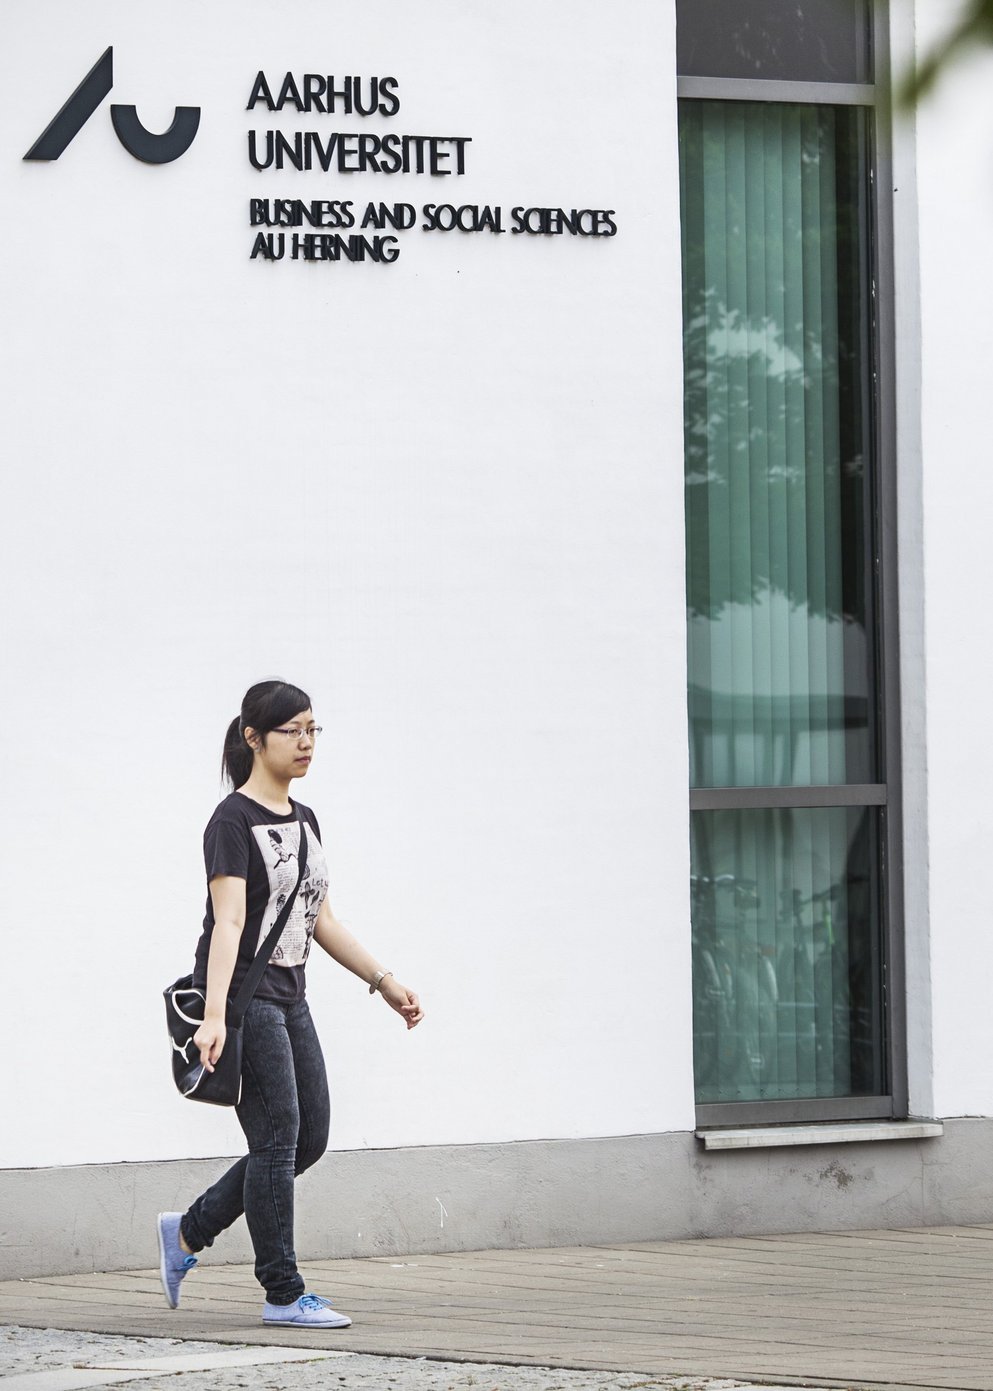 AU Herning, kvinde ved indgang. Fotograf Anders Trærup, AU Kommunikation